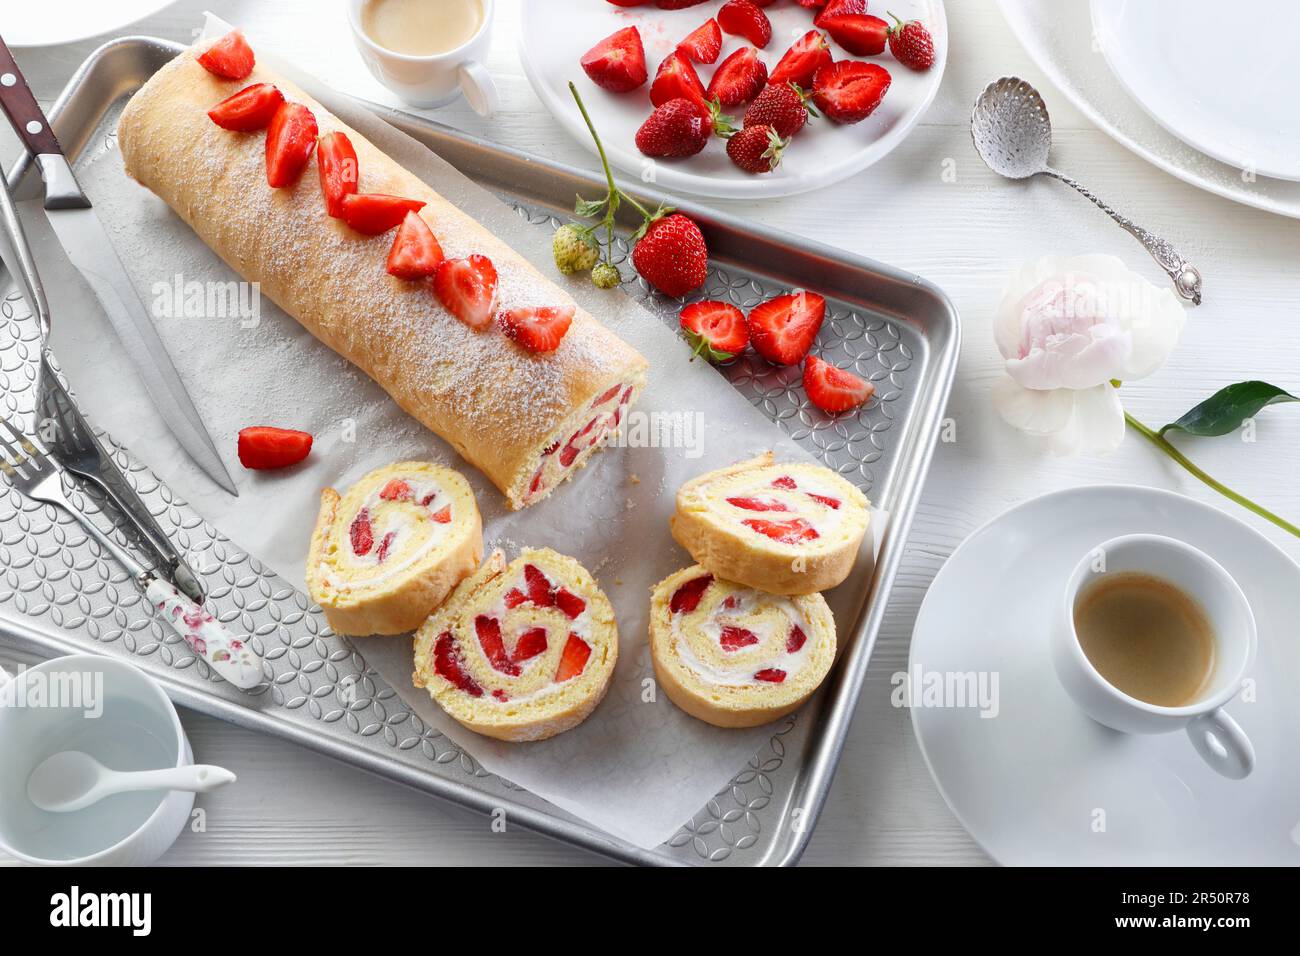 Pastel de esponja con crema batida y fresas frescas Foto de stock